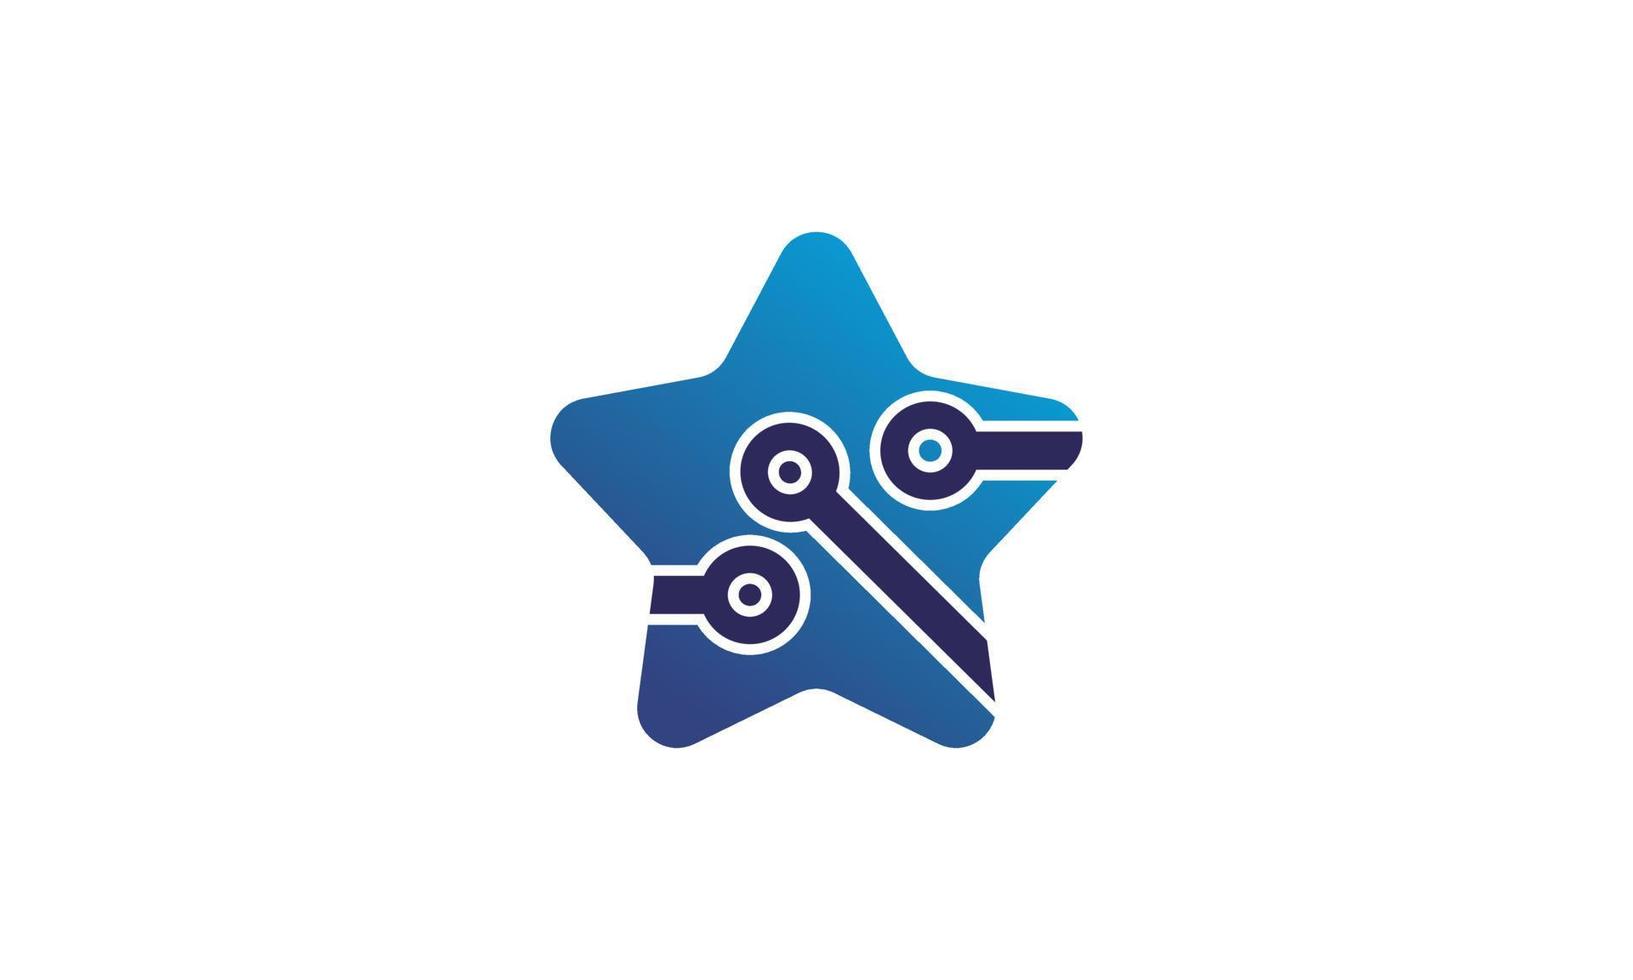 voorraad abstracte ster techno logo ontwerpen concept vector vergroten logo